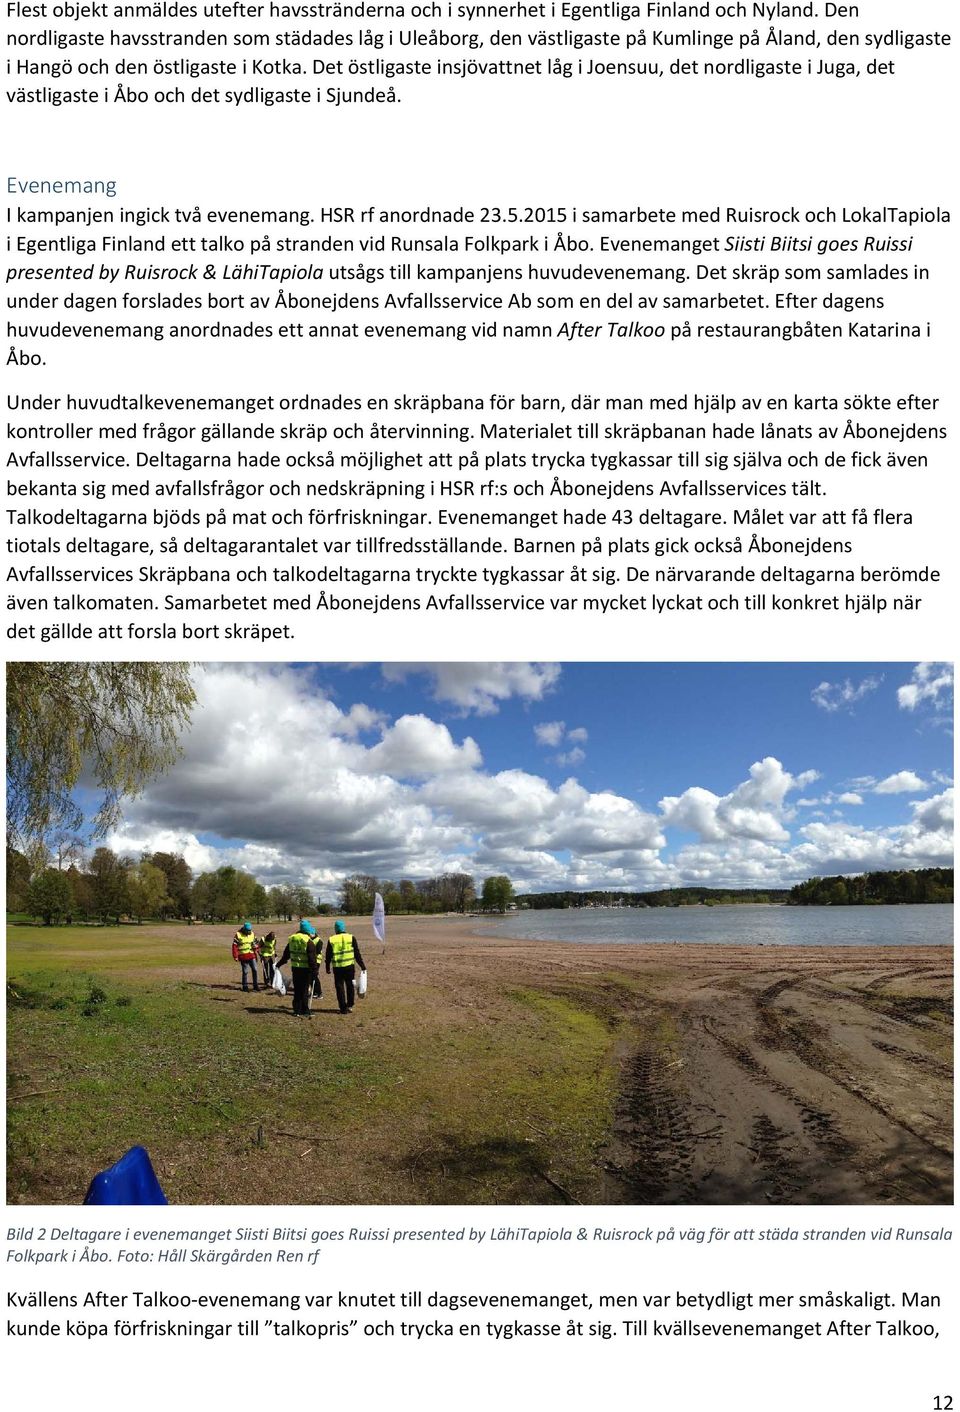 Det östligaste insjövattnet låg i Joensuu, det nordligaste i Juga, det västligaste i Åbo och det sydligaste i Sjundeå. Evenemang I kampanjen ingick två evenemang. HSR rf anordnade 23.5.